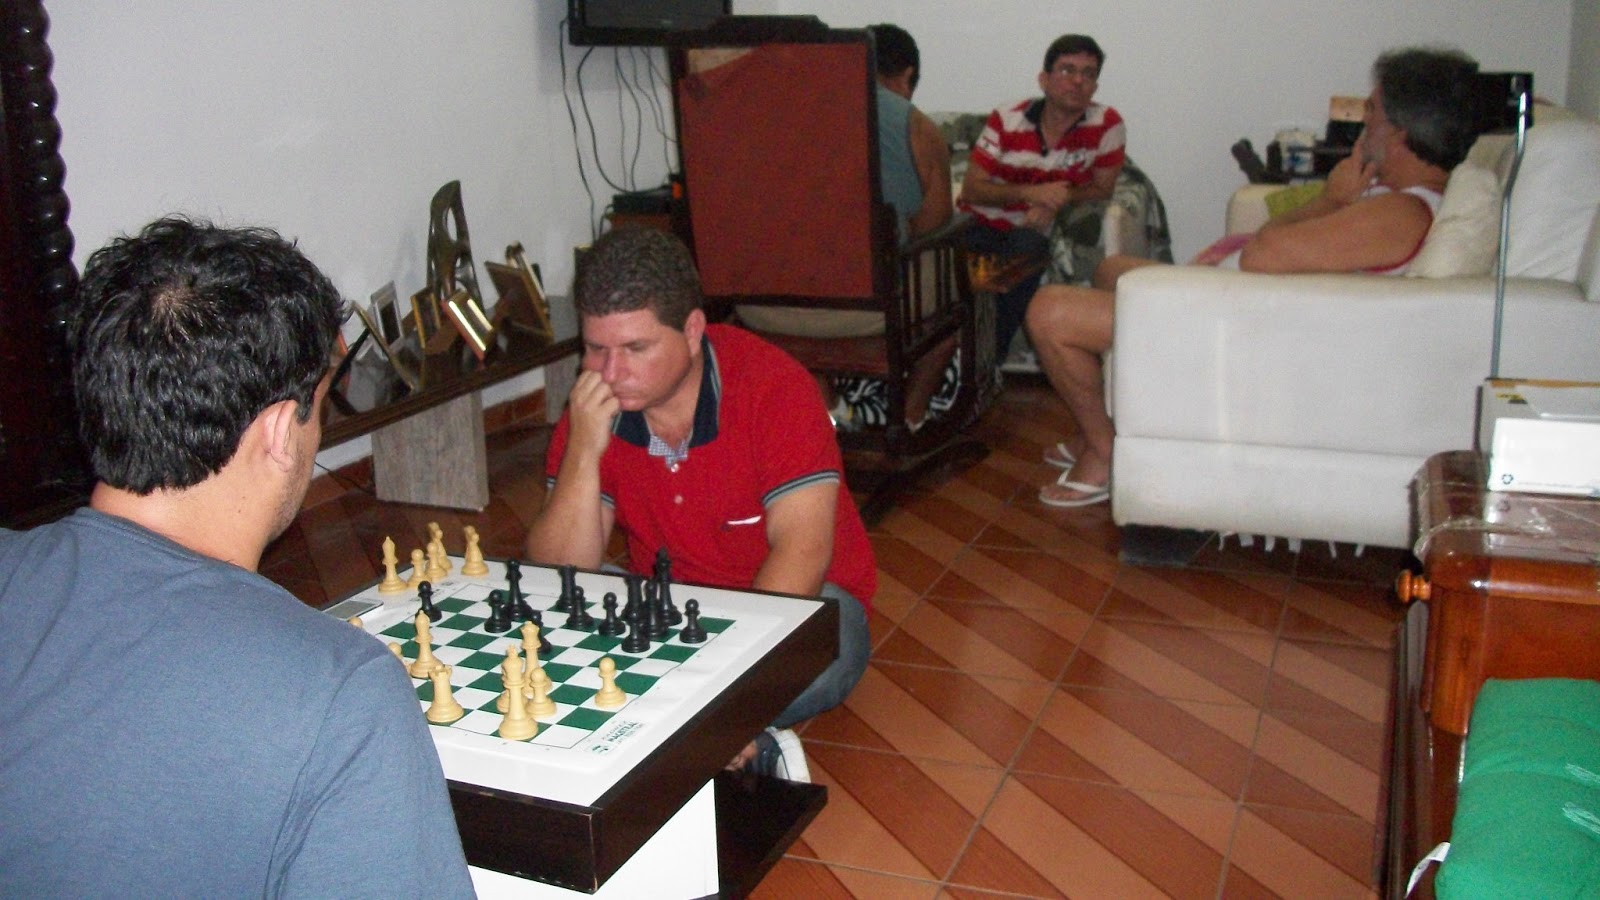 Chess.com Português on X: 23 de janeiro é aniversário da lenda máxima do  xadrez brasileiro: Henrique Mecking! Nossos parabéns ao Mequinho! Jogador  que foi top 3 mundial e nossa maior estrela!  /